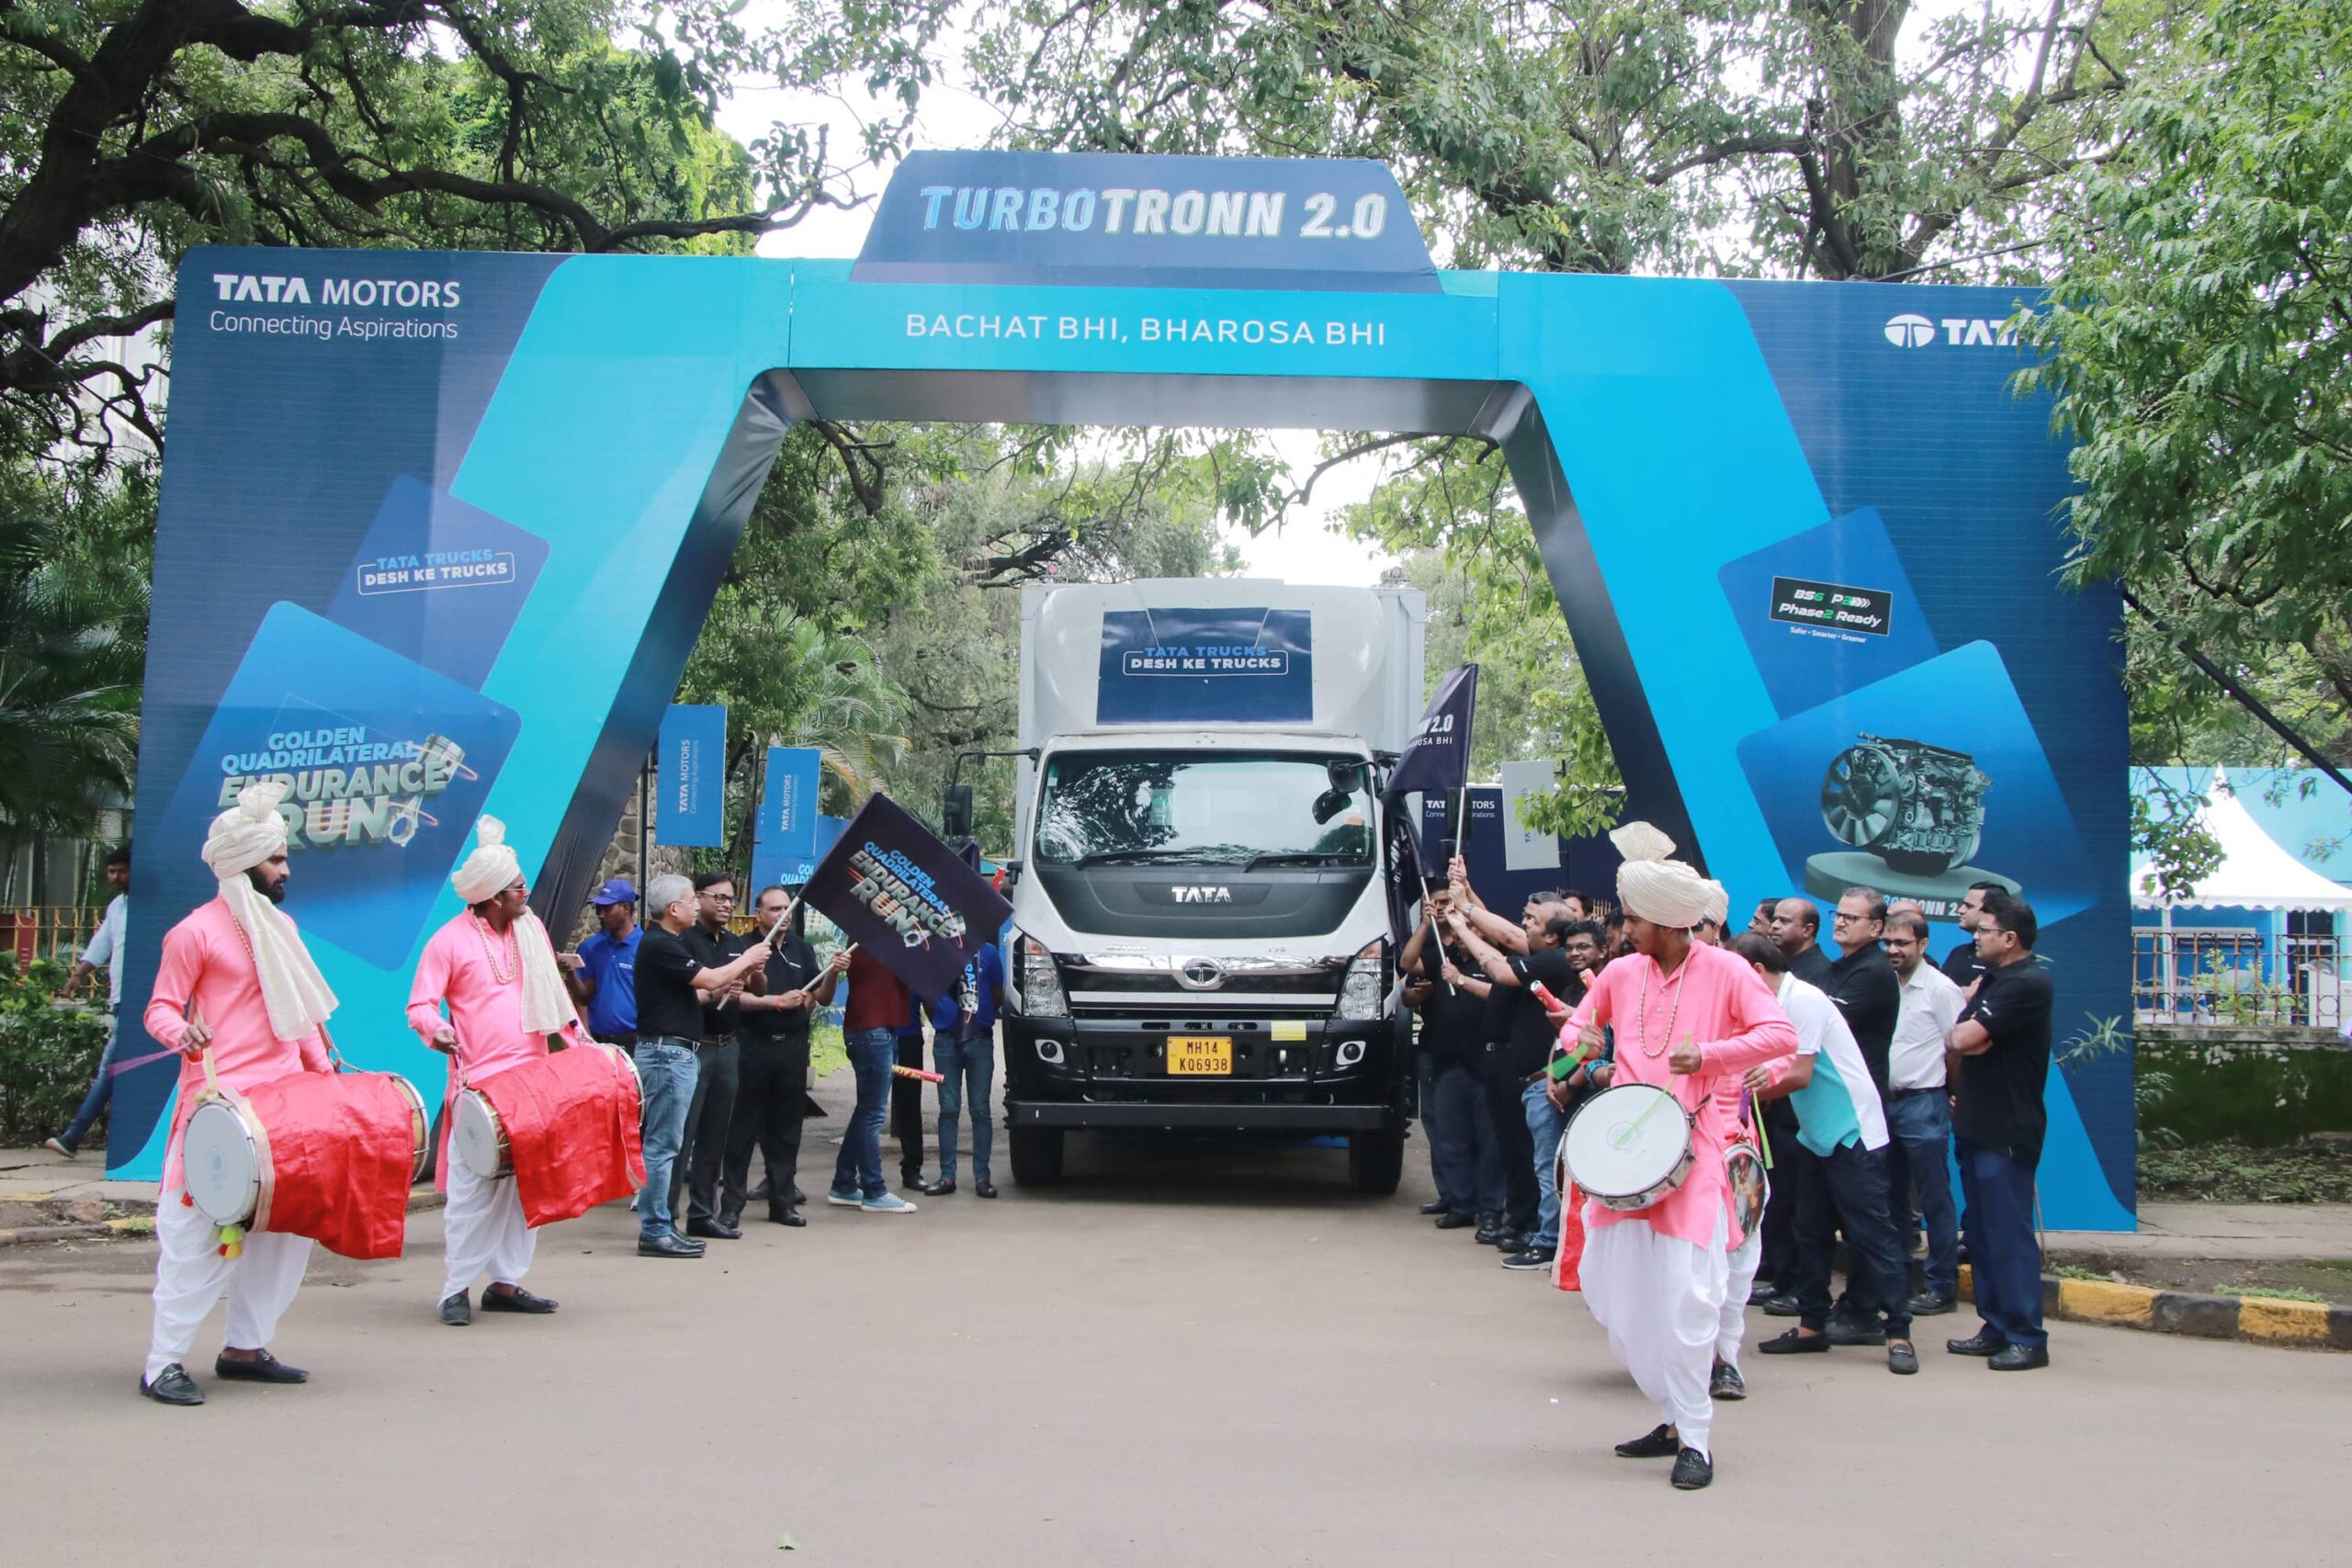 Индийская Tata Motors обновила 5-литровый дизель Turbotronn